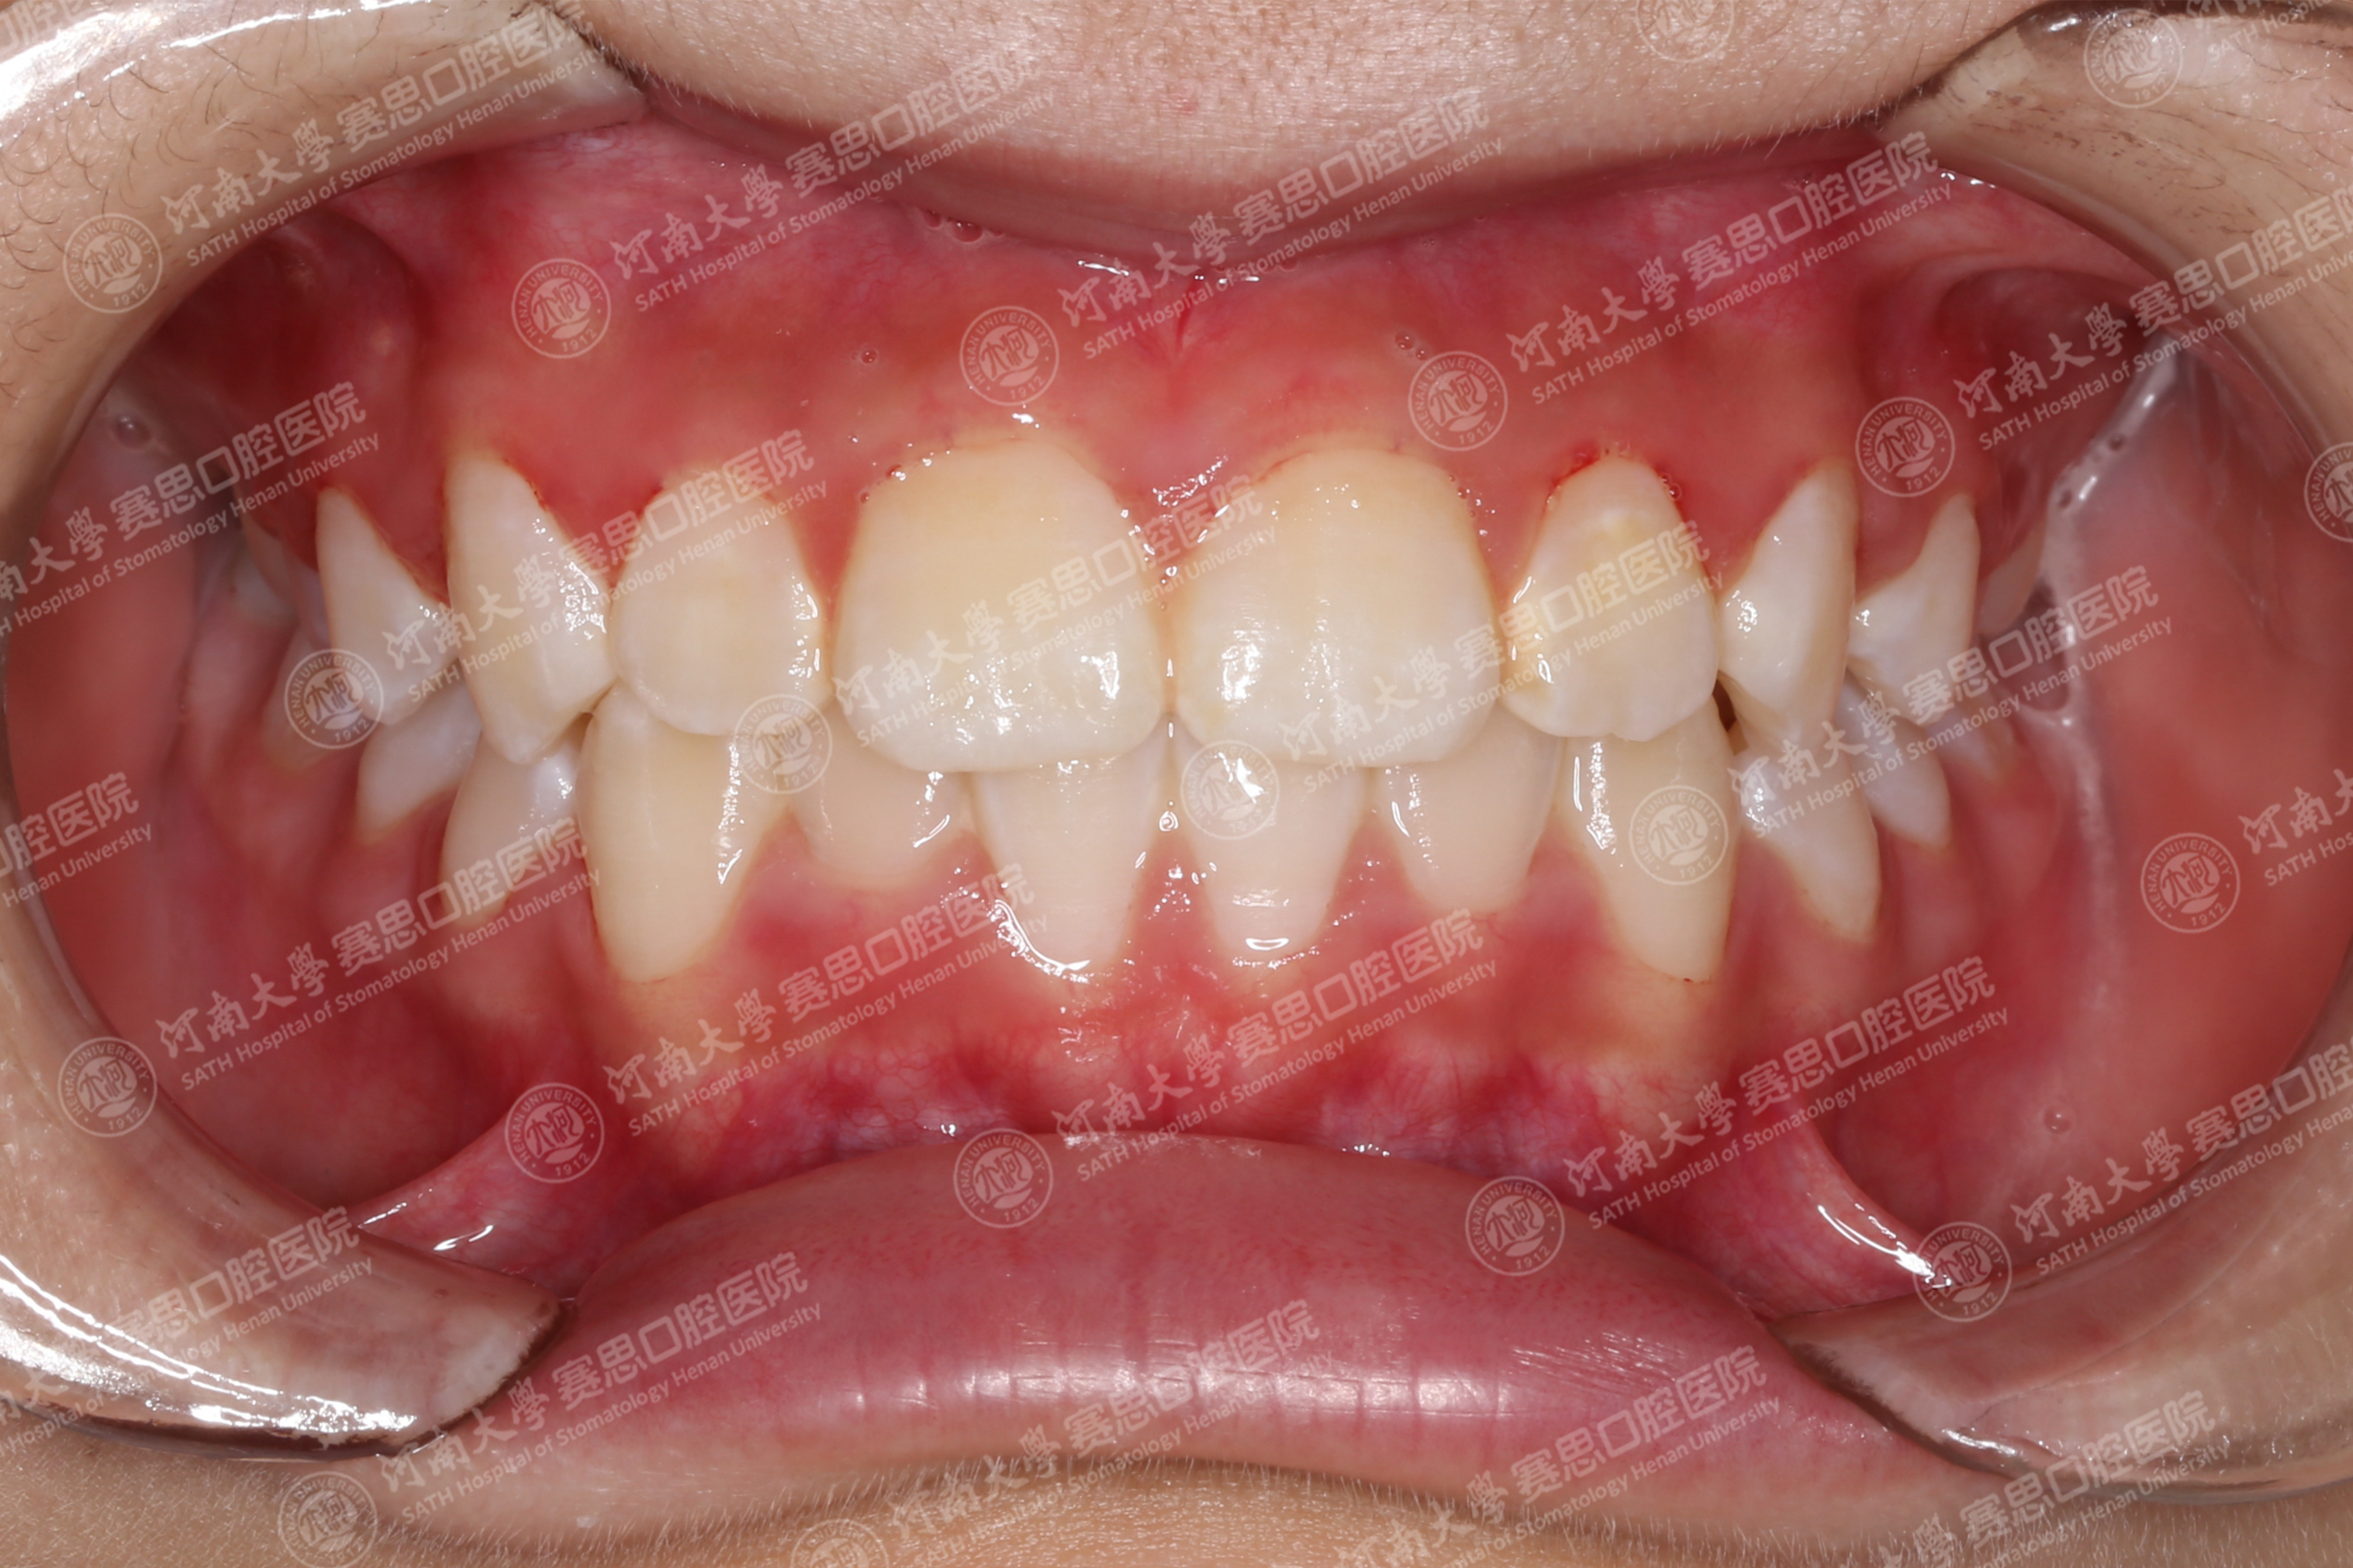 早发现早治疗，替牙期的矫正很重要